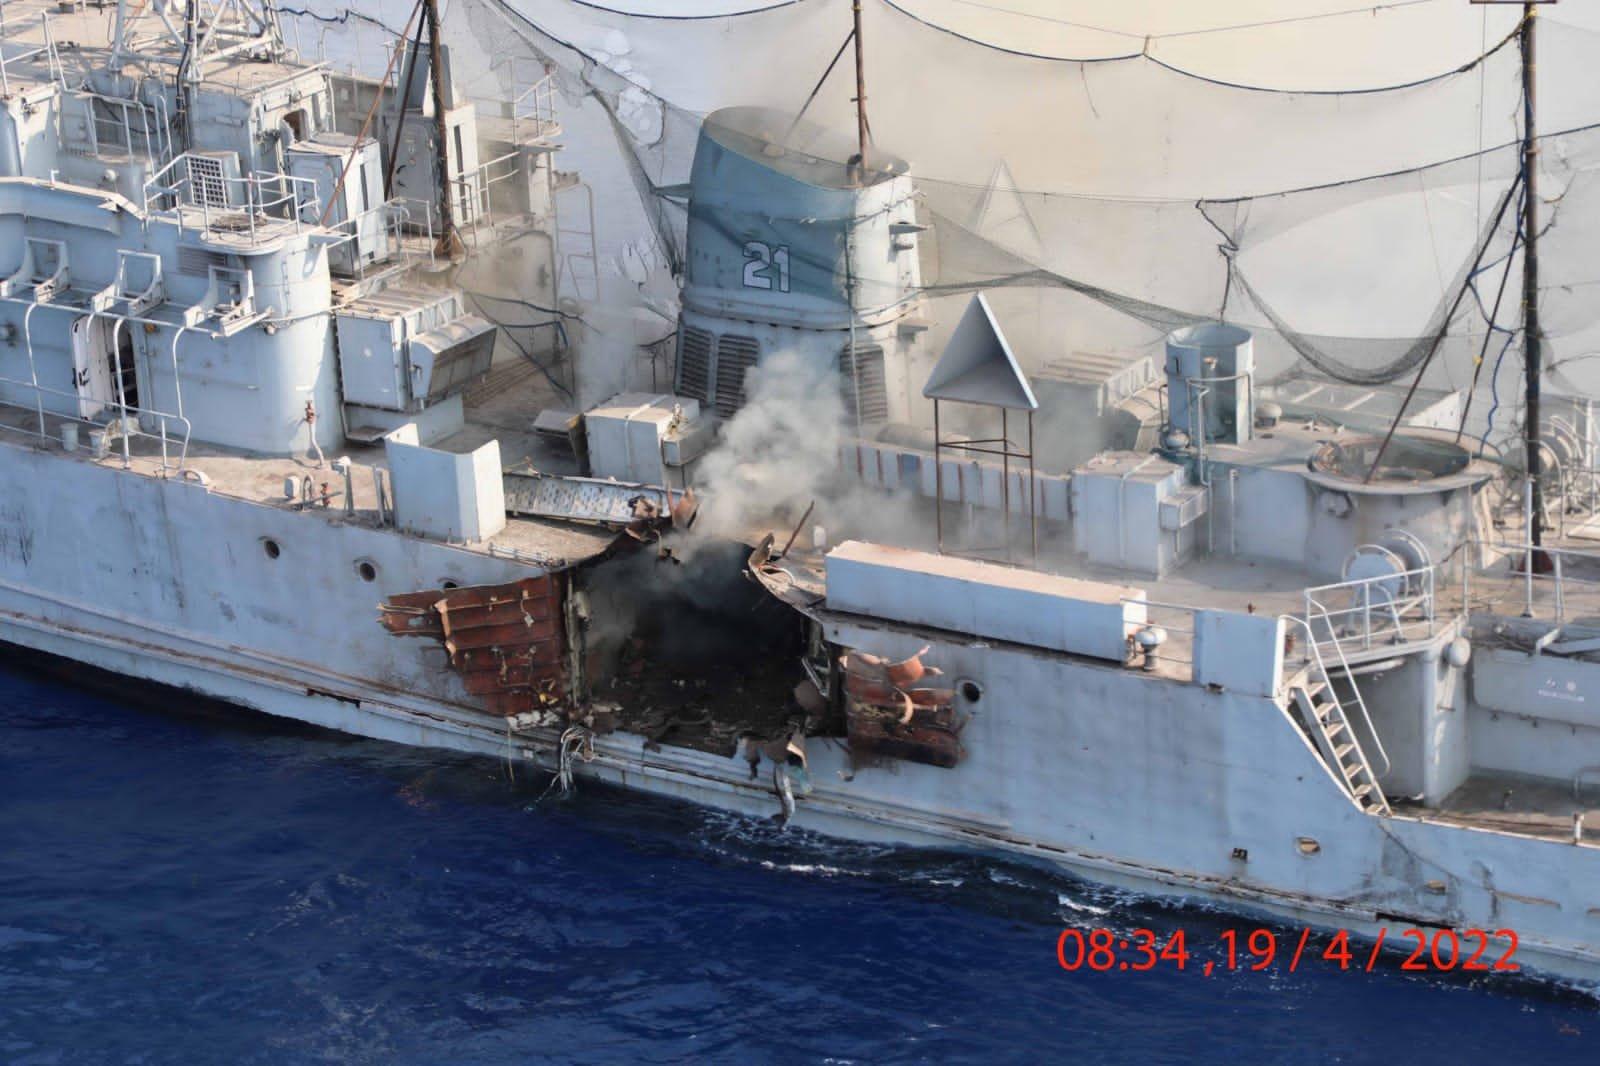 صاروخ "براهموس" الأسرع من الصوت "يخلق حفرة" في سفينة البحرية الهندية